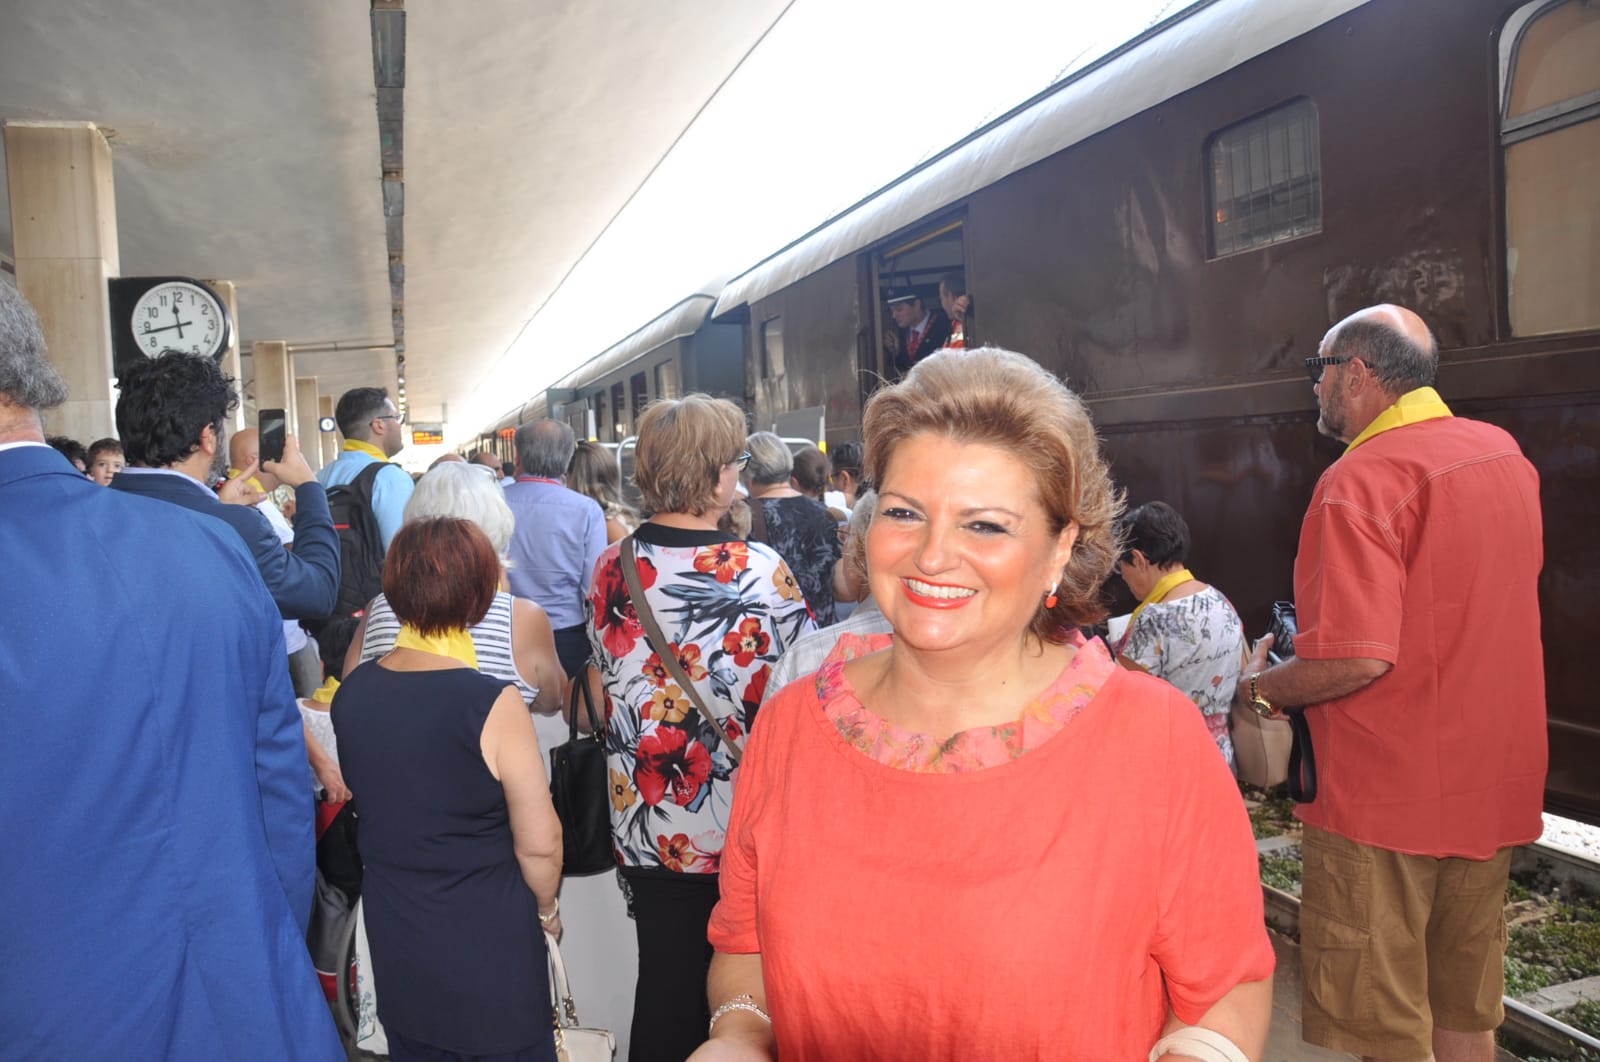 Benevento| Treno storico, un’occasione di sviluppo. Del Prete: recupero OML importante per la città